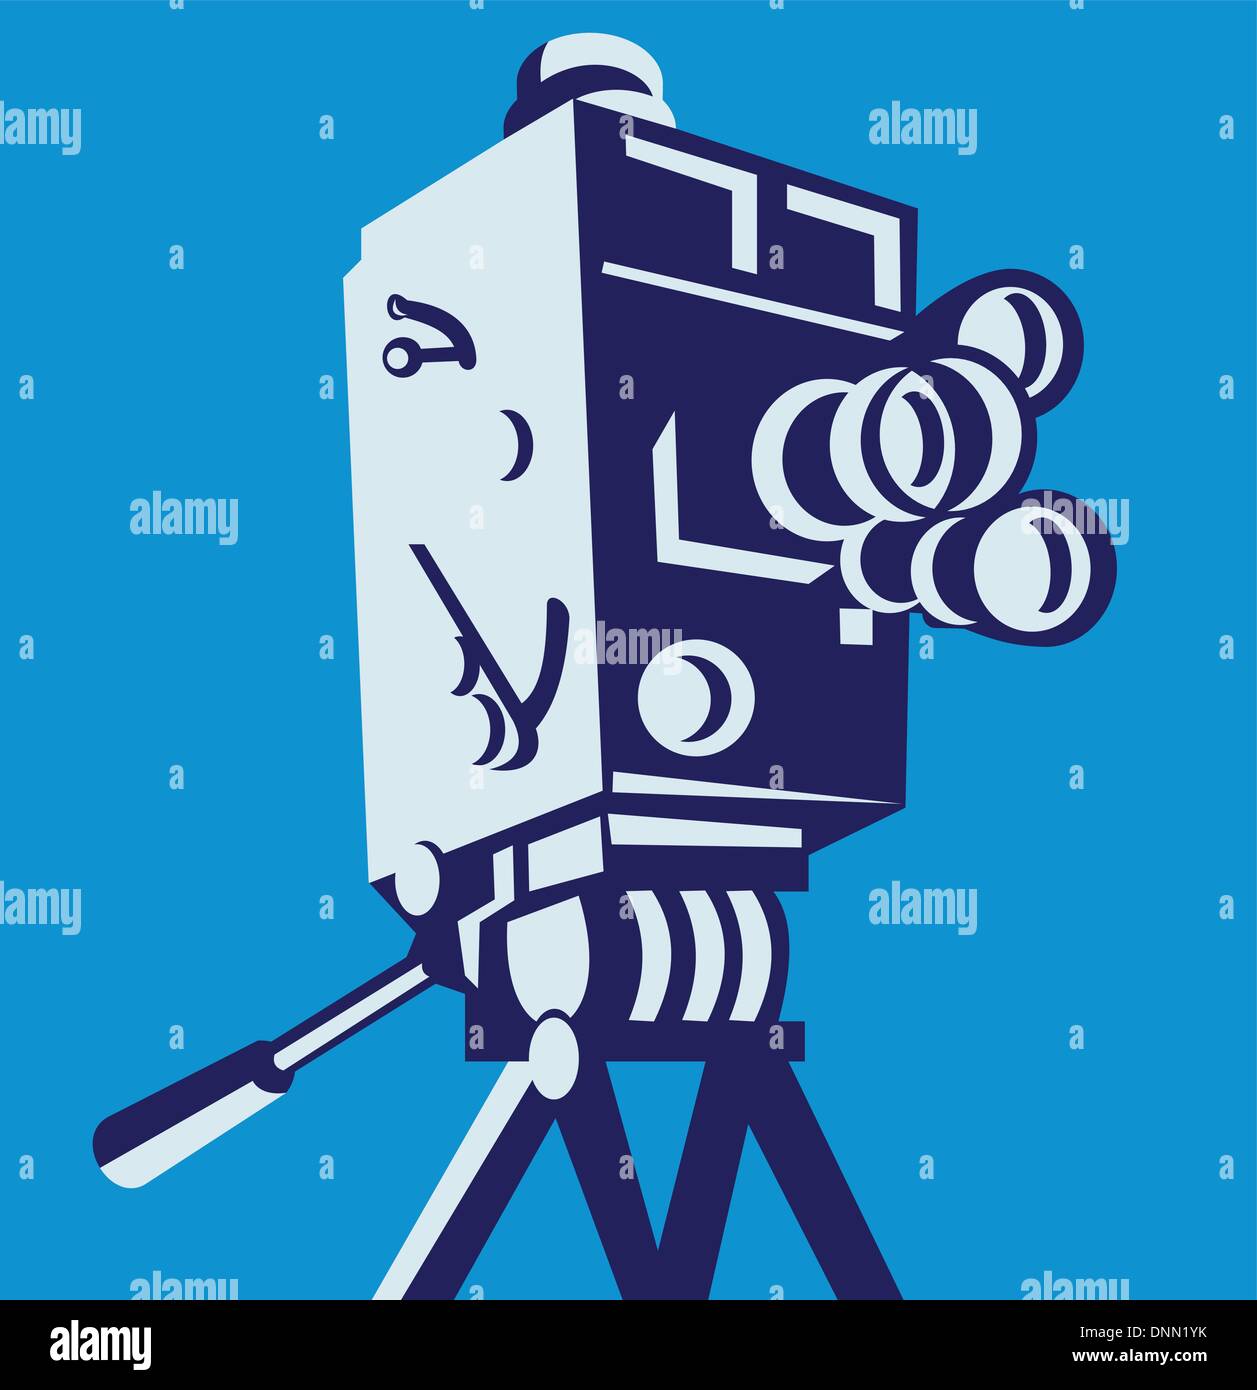 Illustration d'une caméra vidéo film film vintage vu de l'angle faible à l'intérieur set square fait en style rétro. Illustration de Vecteur